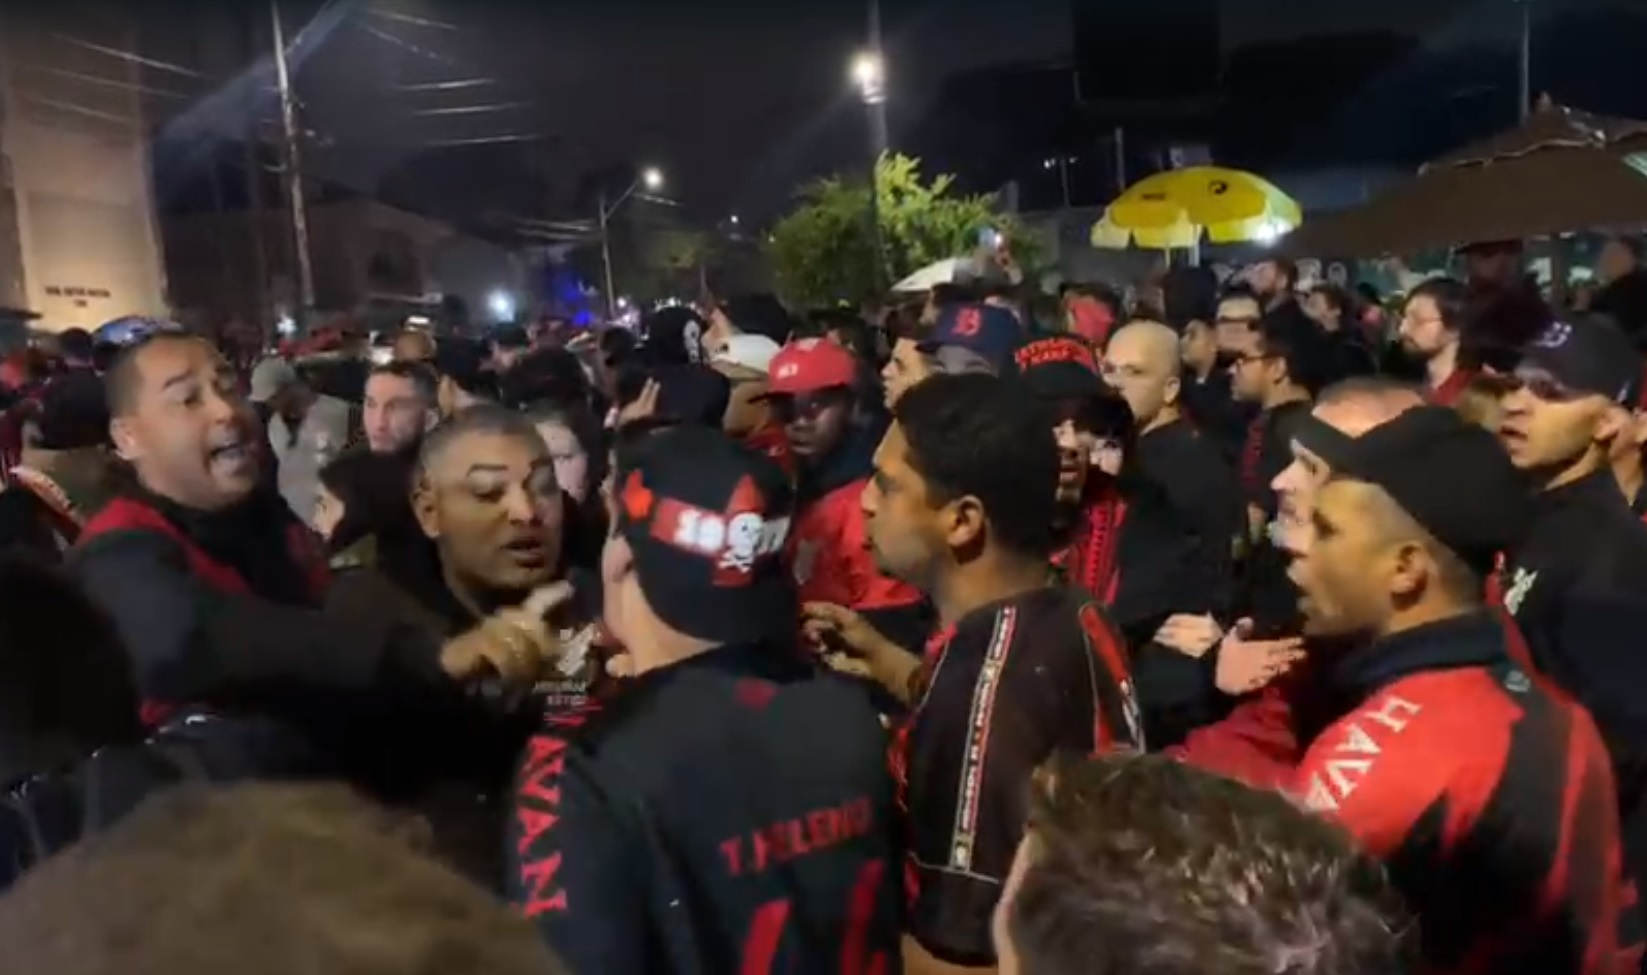  Torcedores de Athletico e Flamengo iniciam princípio de briga na porta da Arenada Baixada, em Curitiba. (Imagem: Jhonny Pedroso / RIC Mais) 